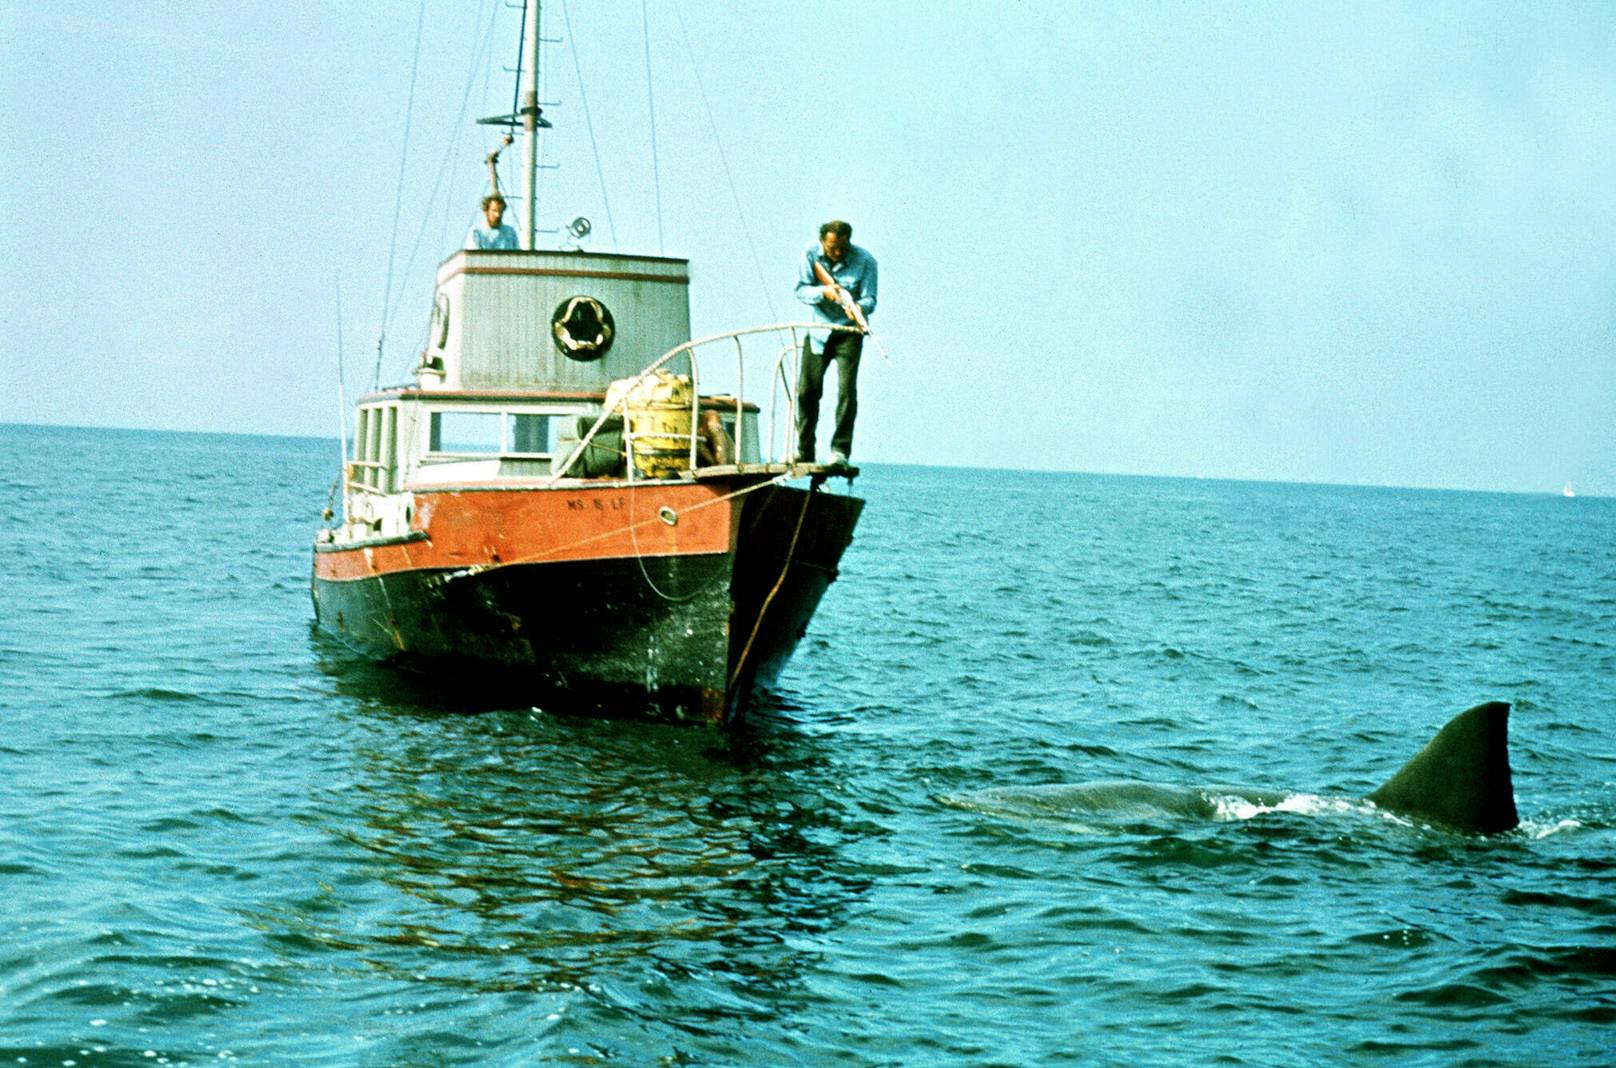 Die Produktion des Films war ein einziger Albtraum. Zunächst für 55 Tage angesetzt, verschlang "Der Weiße Hai" eine Drehzeit von knapp 160 Tagen. Das sorgte sowohl bei Regisseur Steven Spielberg als auch bei den Produzenten für große Bauchschmerzen.